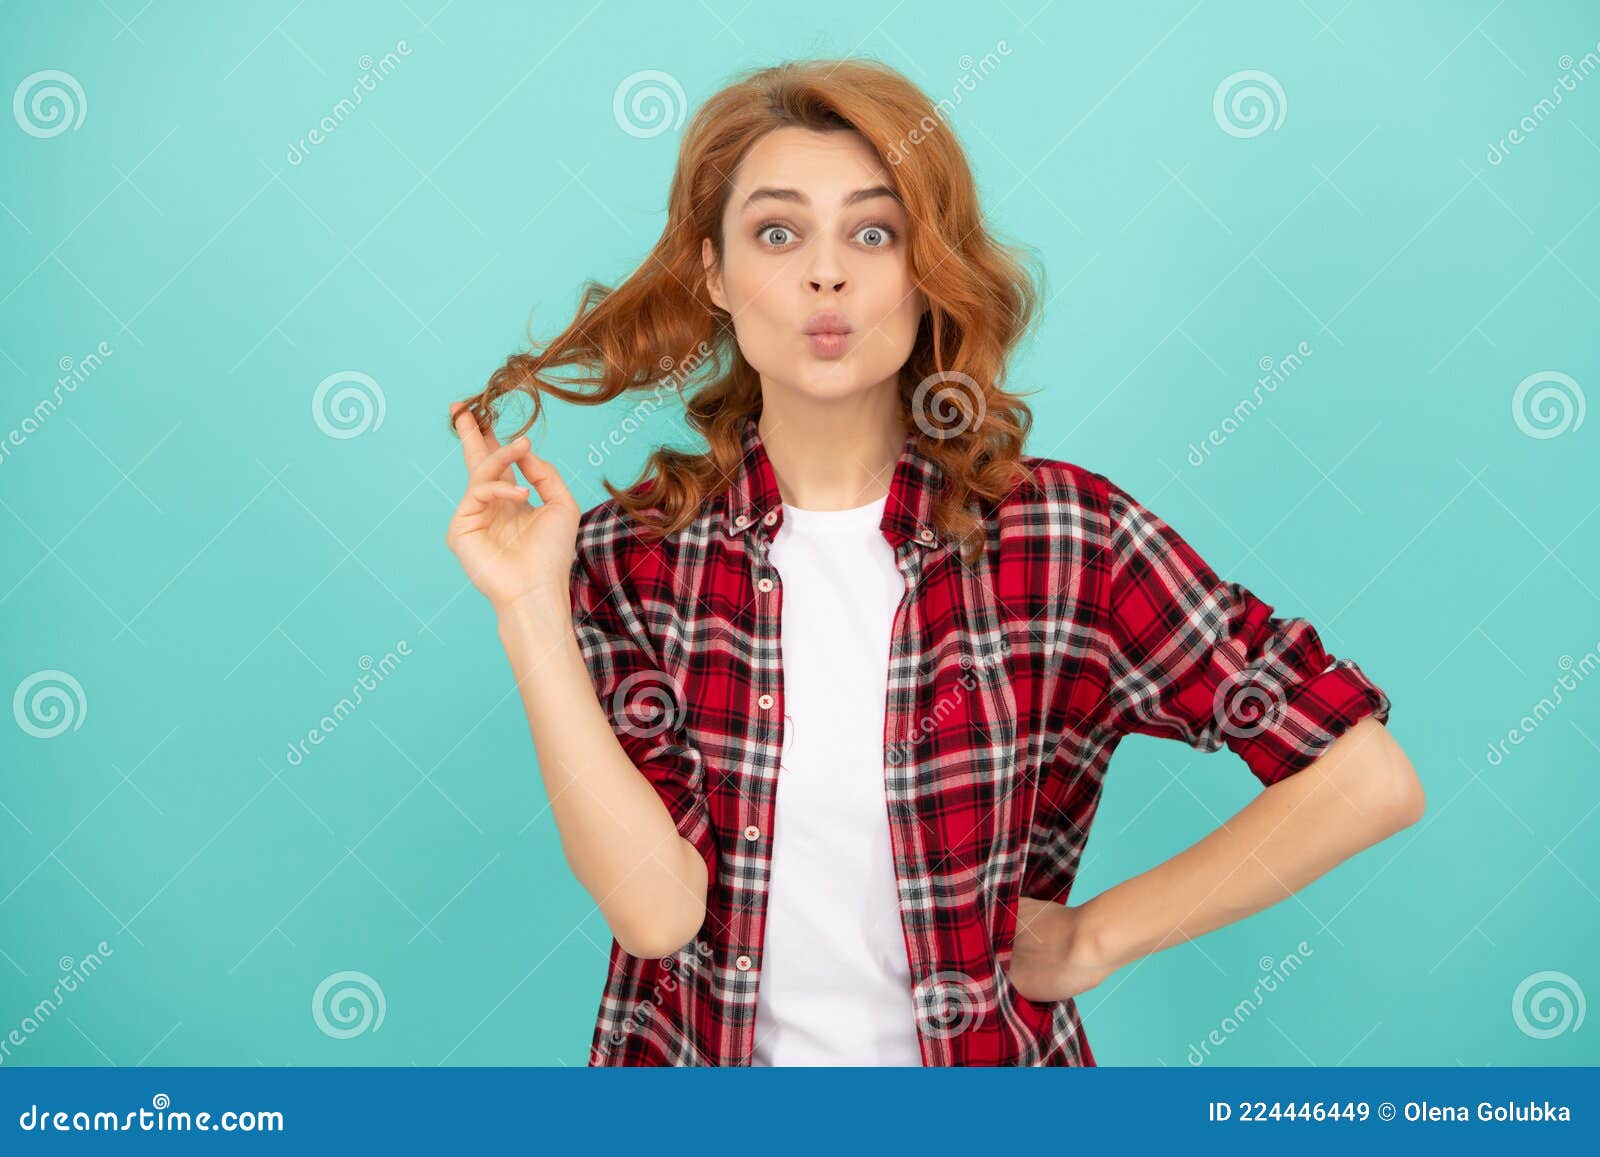 Modelo Femenino En Camisa a Cuadros. Bonito Aspecto De Una Joven Sonriente. De Cabello Imagen de archivo Imagen de emocional, checkered: 224446449